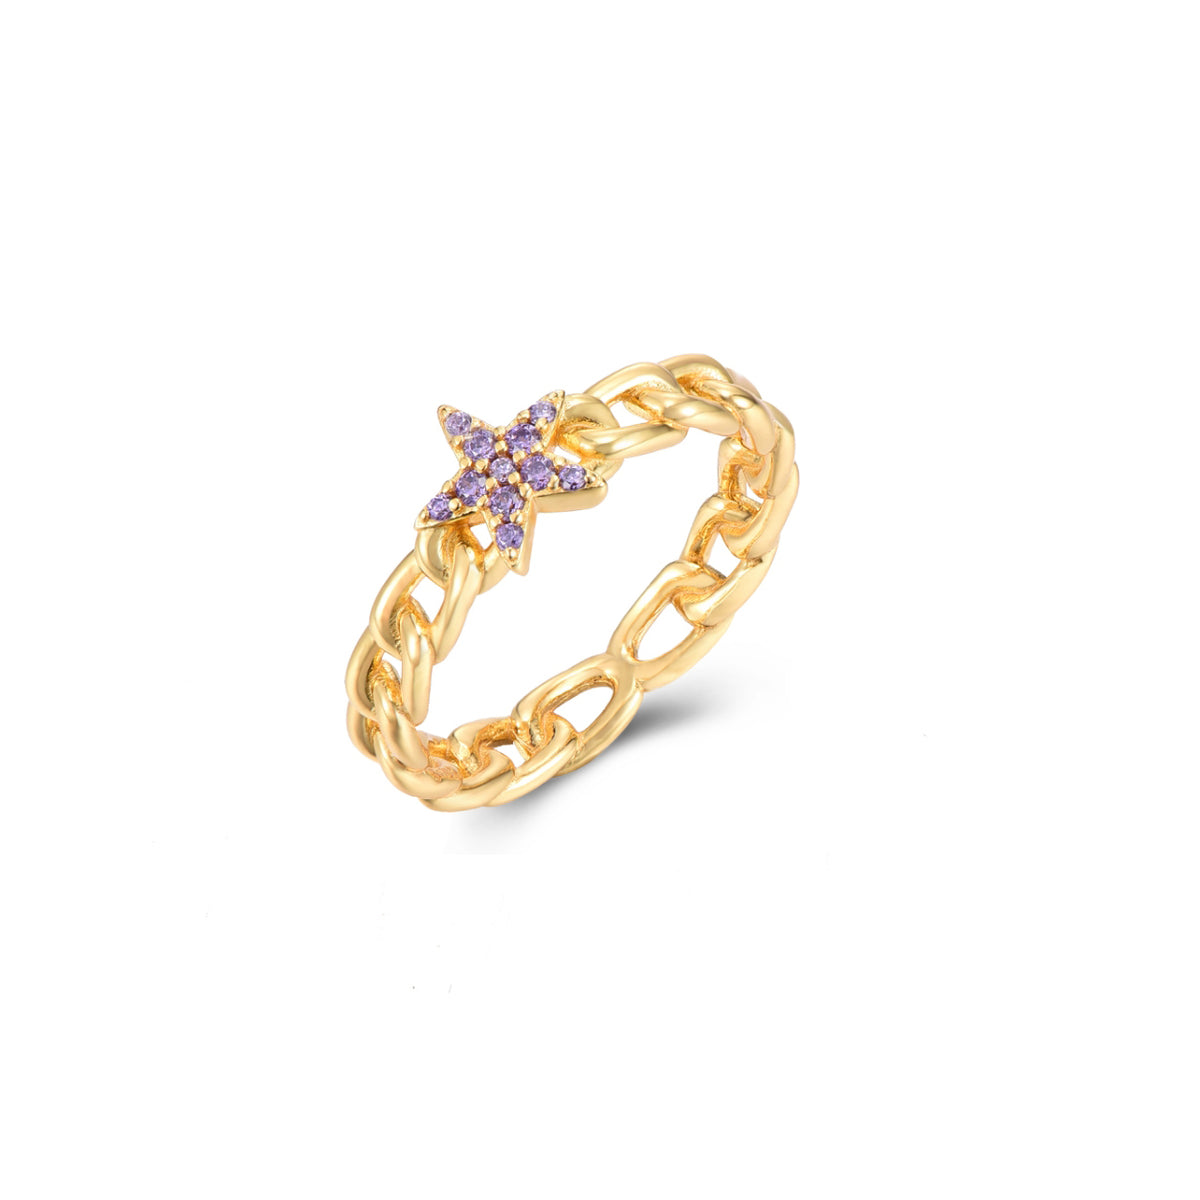 Violet star ring gold